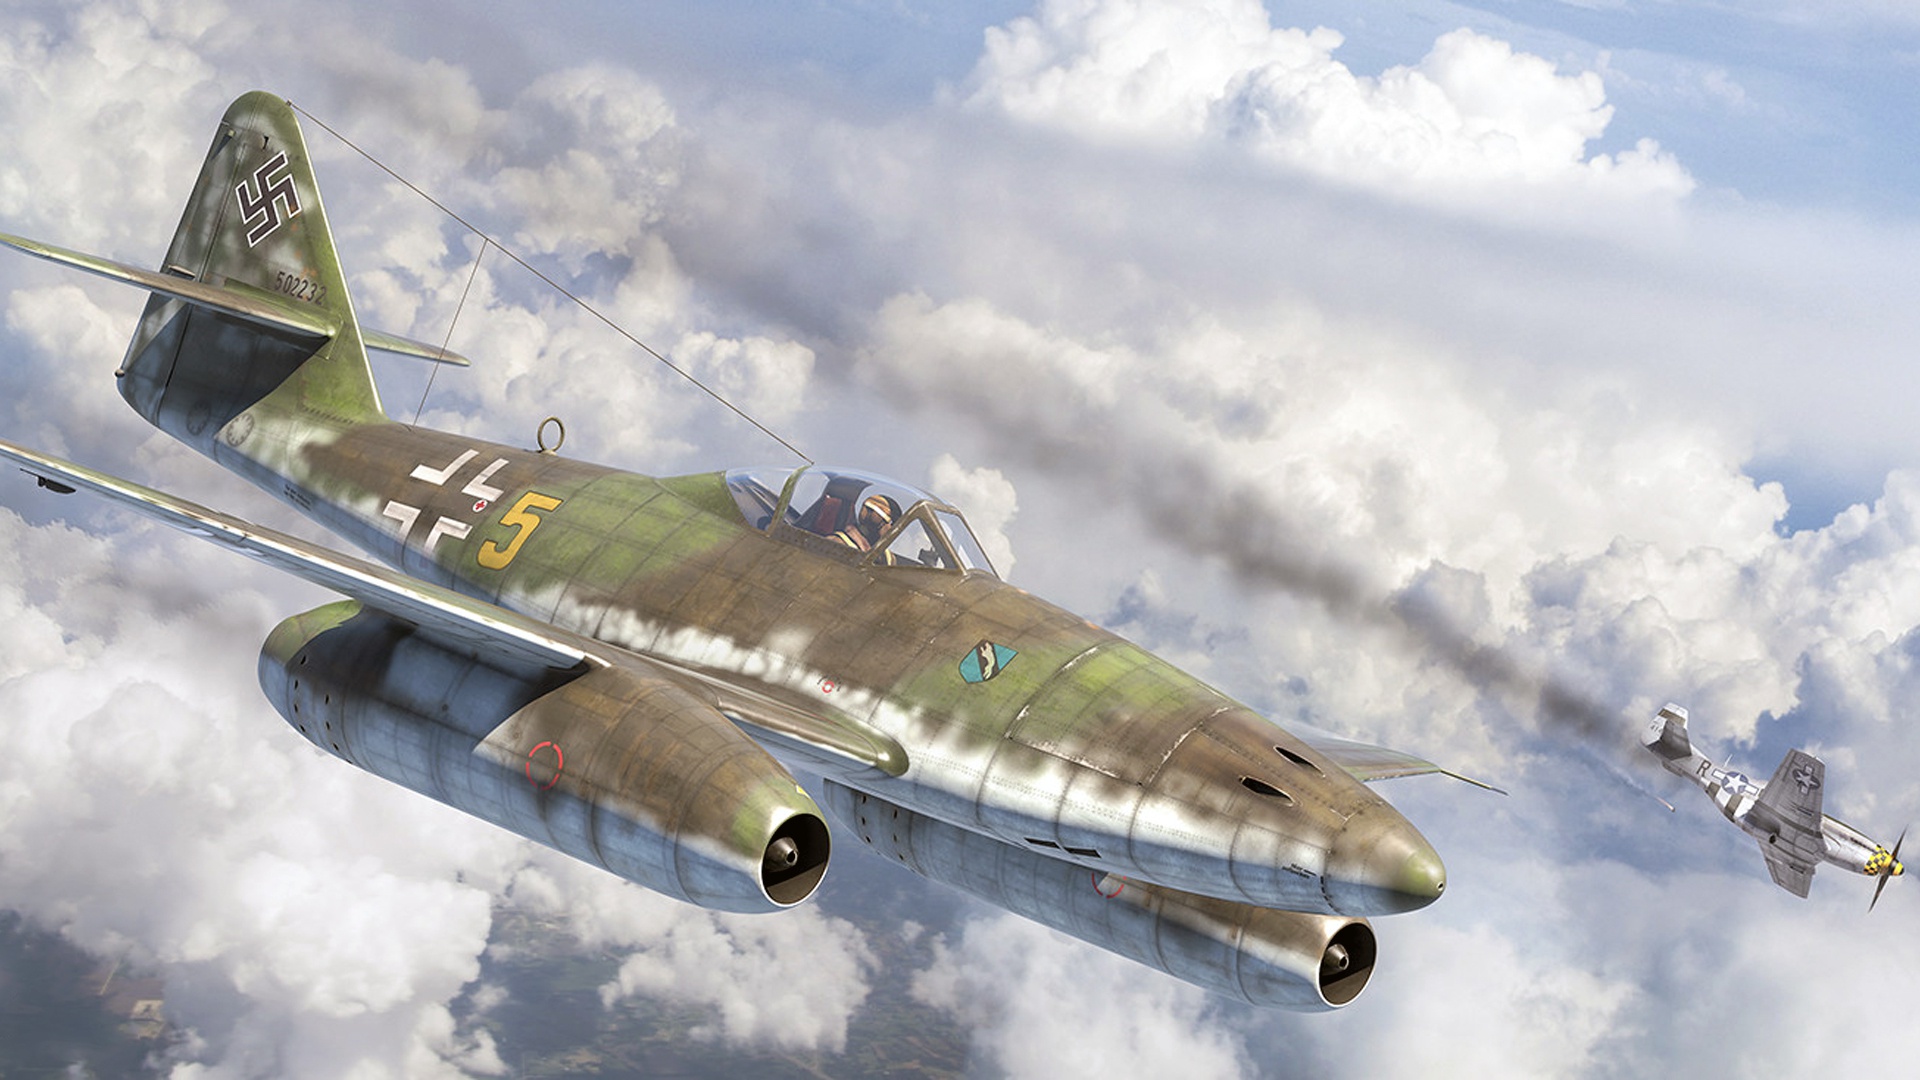 Messerschmitt Me 262 Luftwaffe Artwork Vehicle Military Aircraft Aircraft Military World War Ii 1920x1080